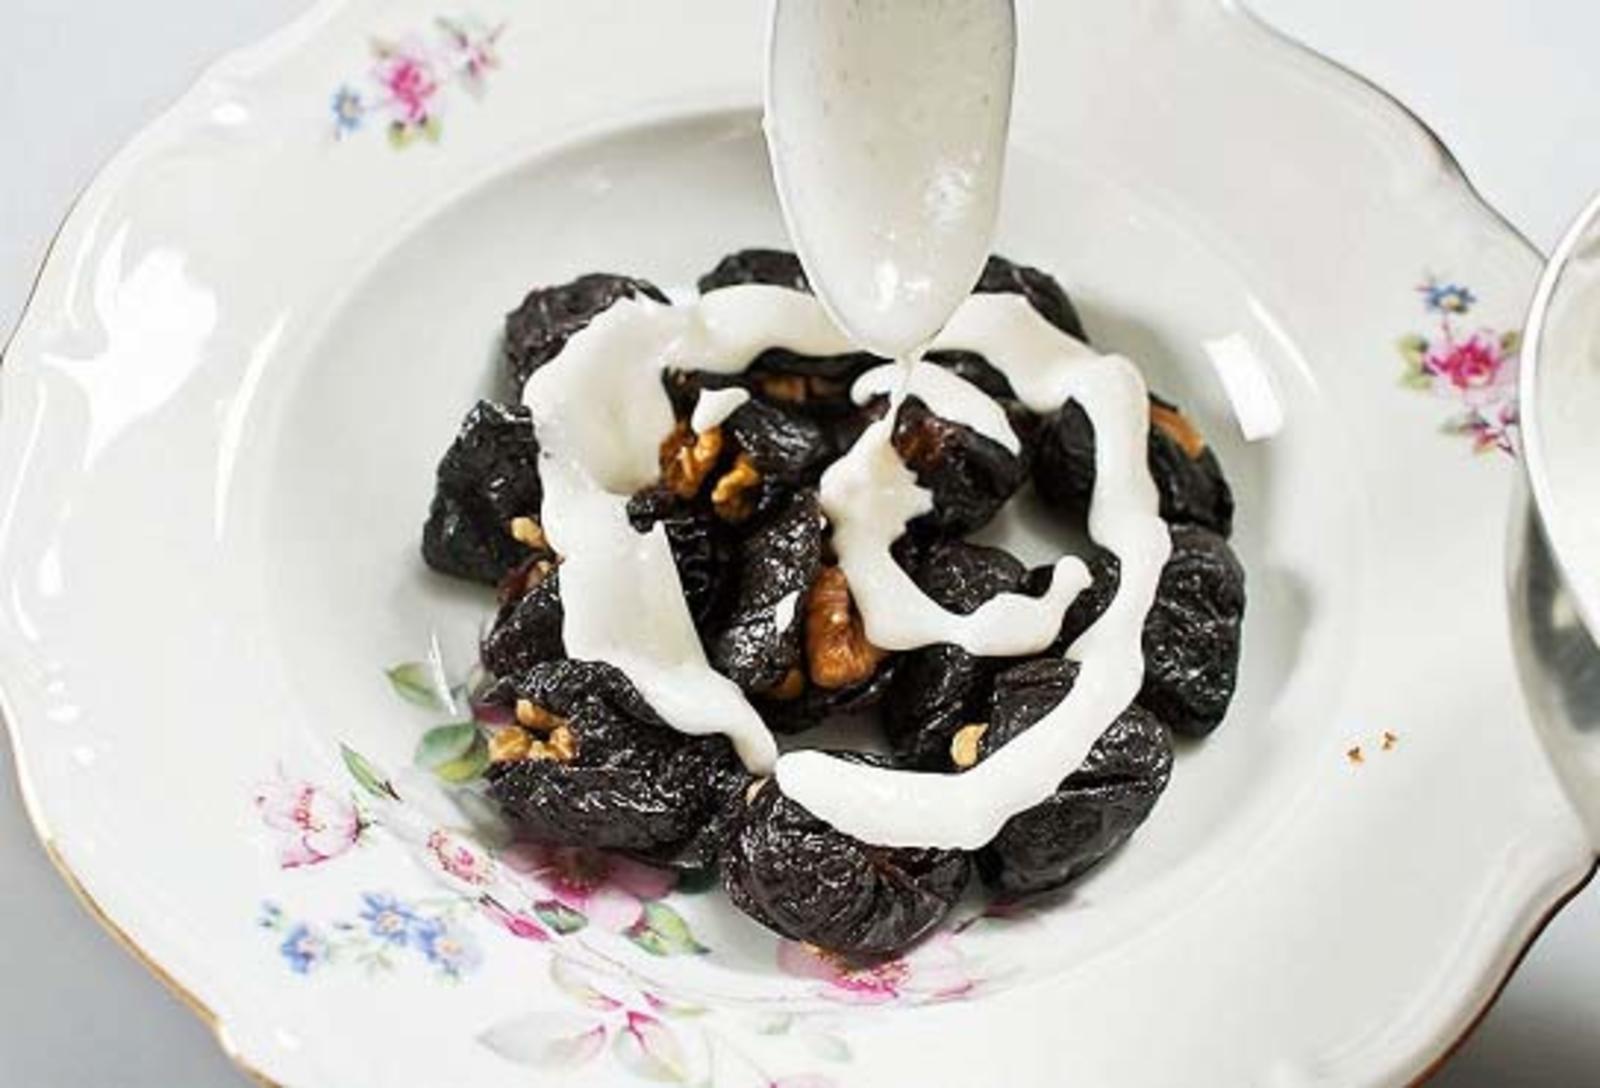 Чернослив с орехами в сметане рецепт